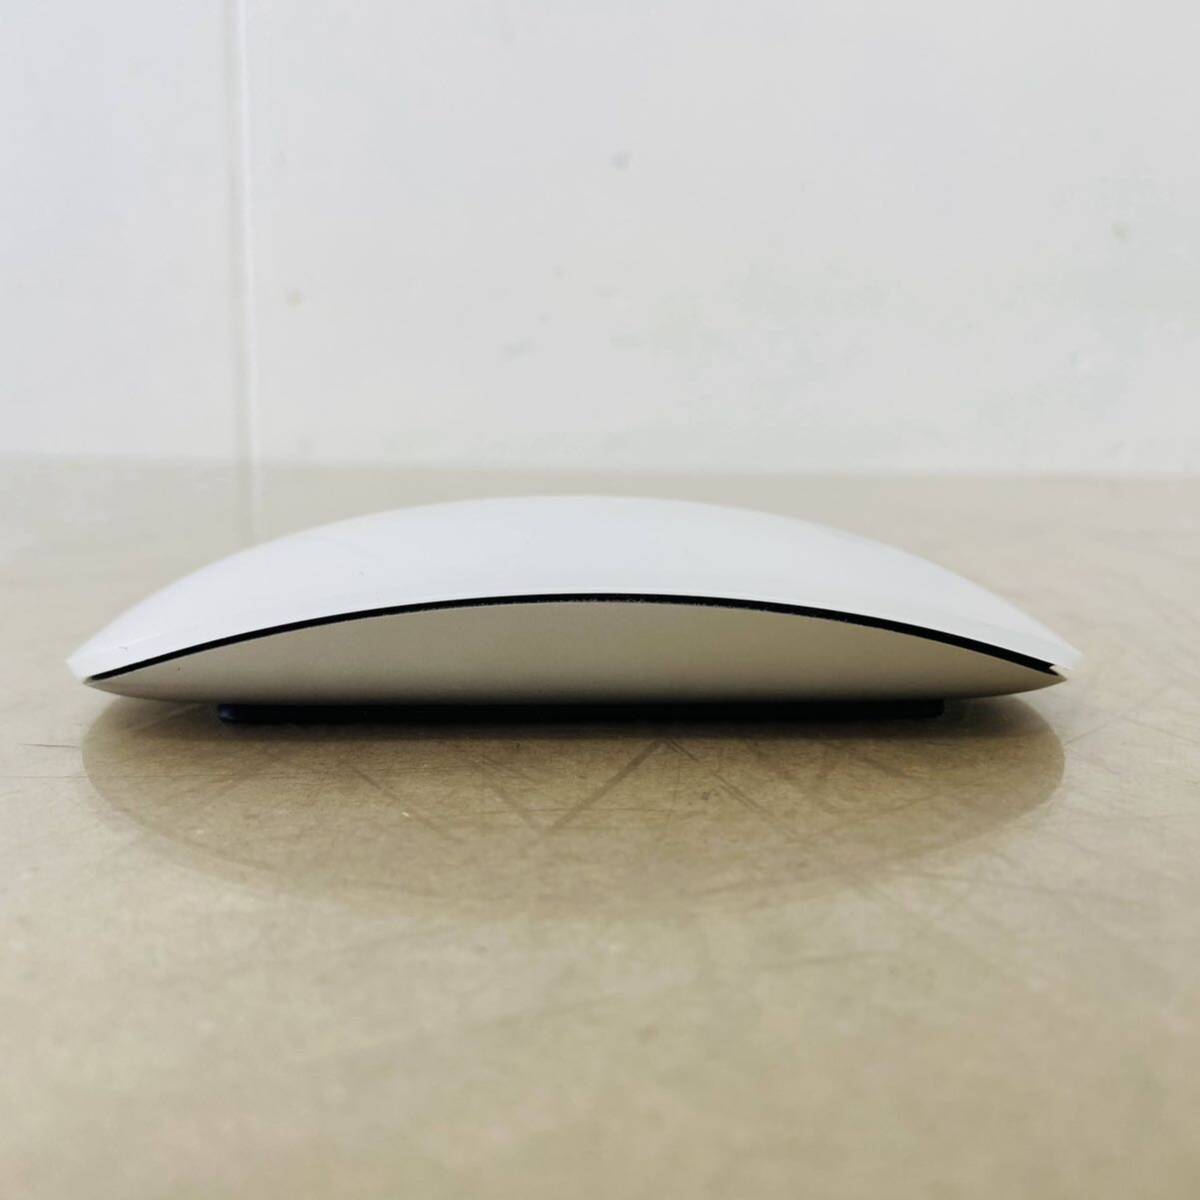 Apple Magic Mouse 2 　MLA02J/A 　A1657 マジックマウス ワイヤレスマウス　i17838　コンパクト発送　